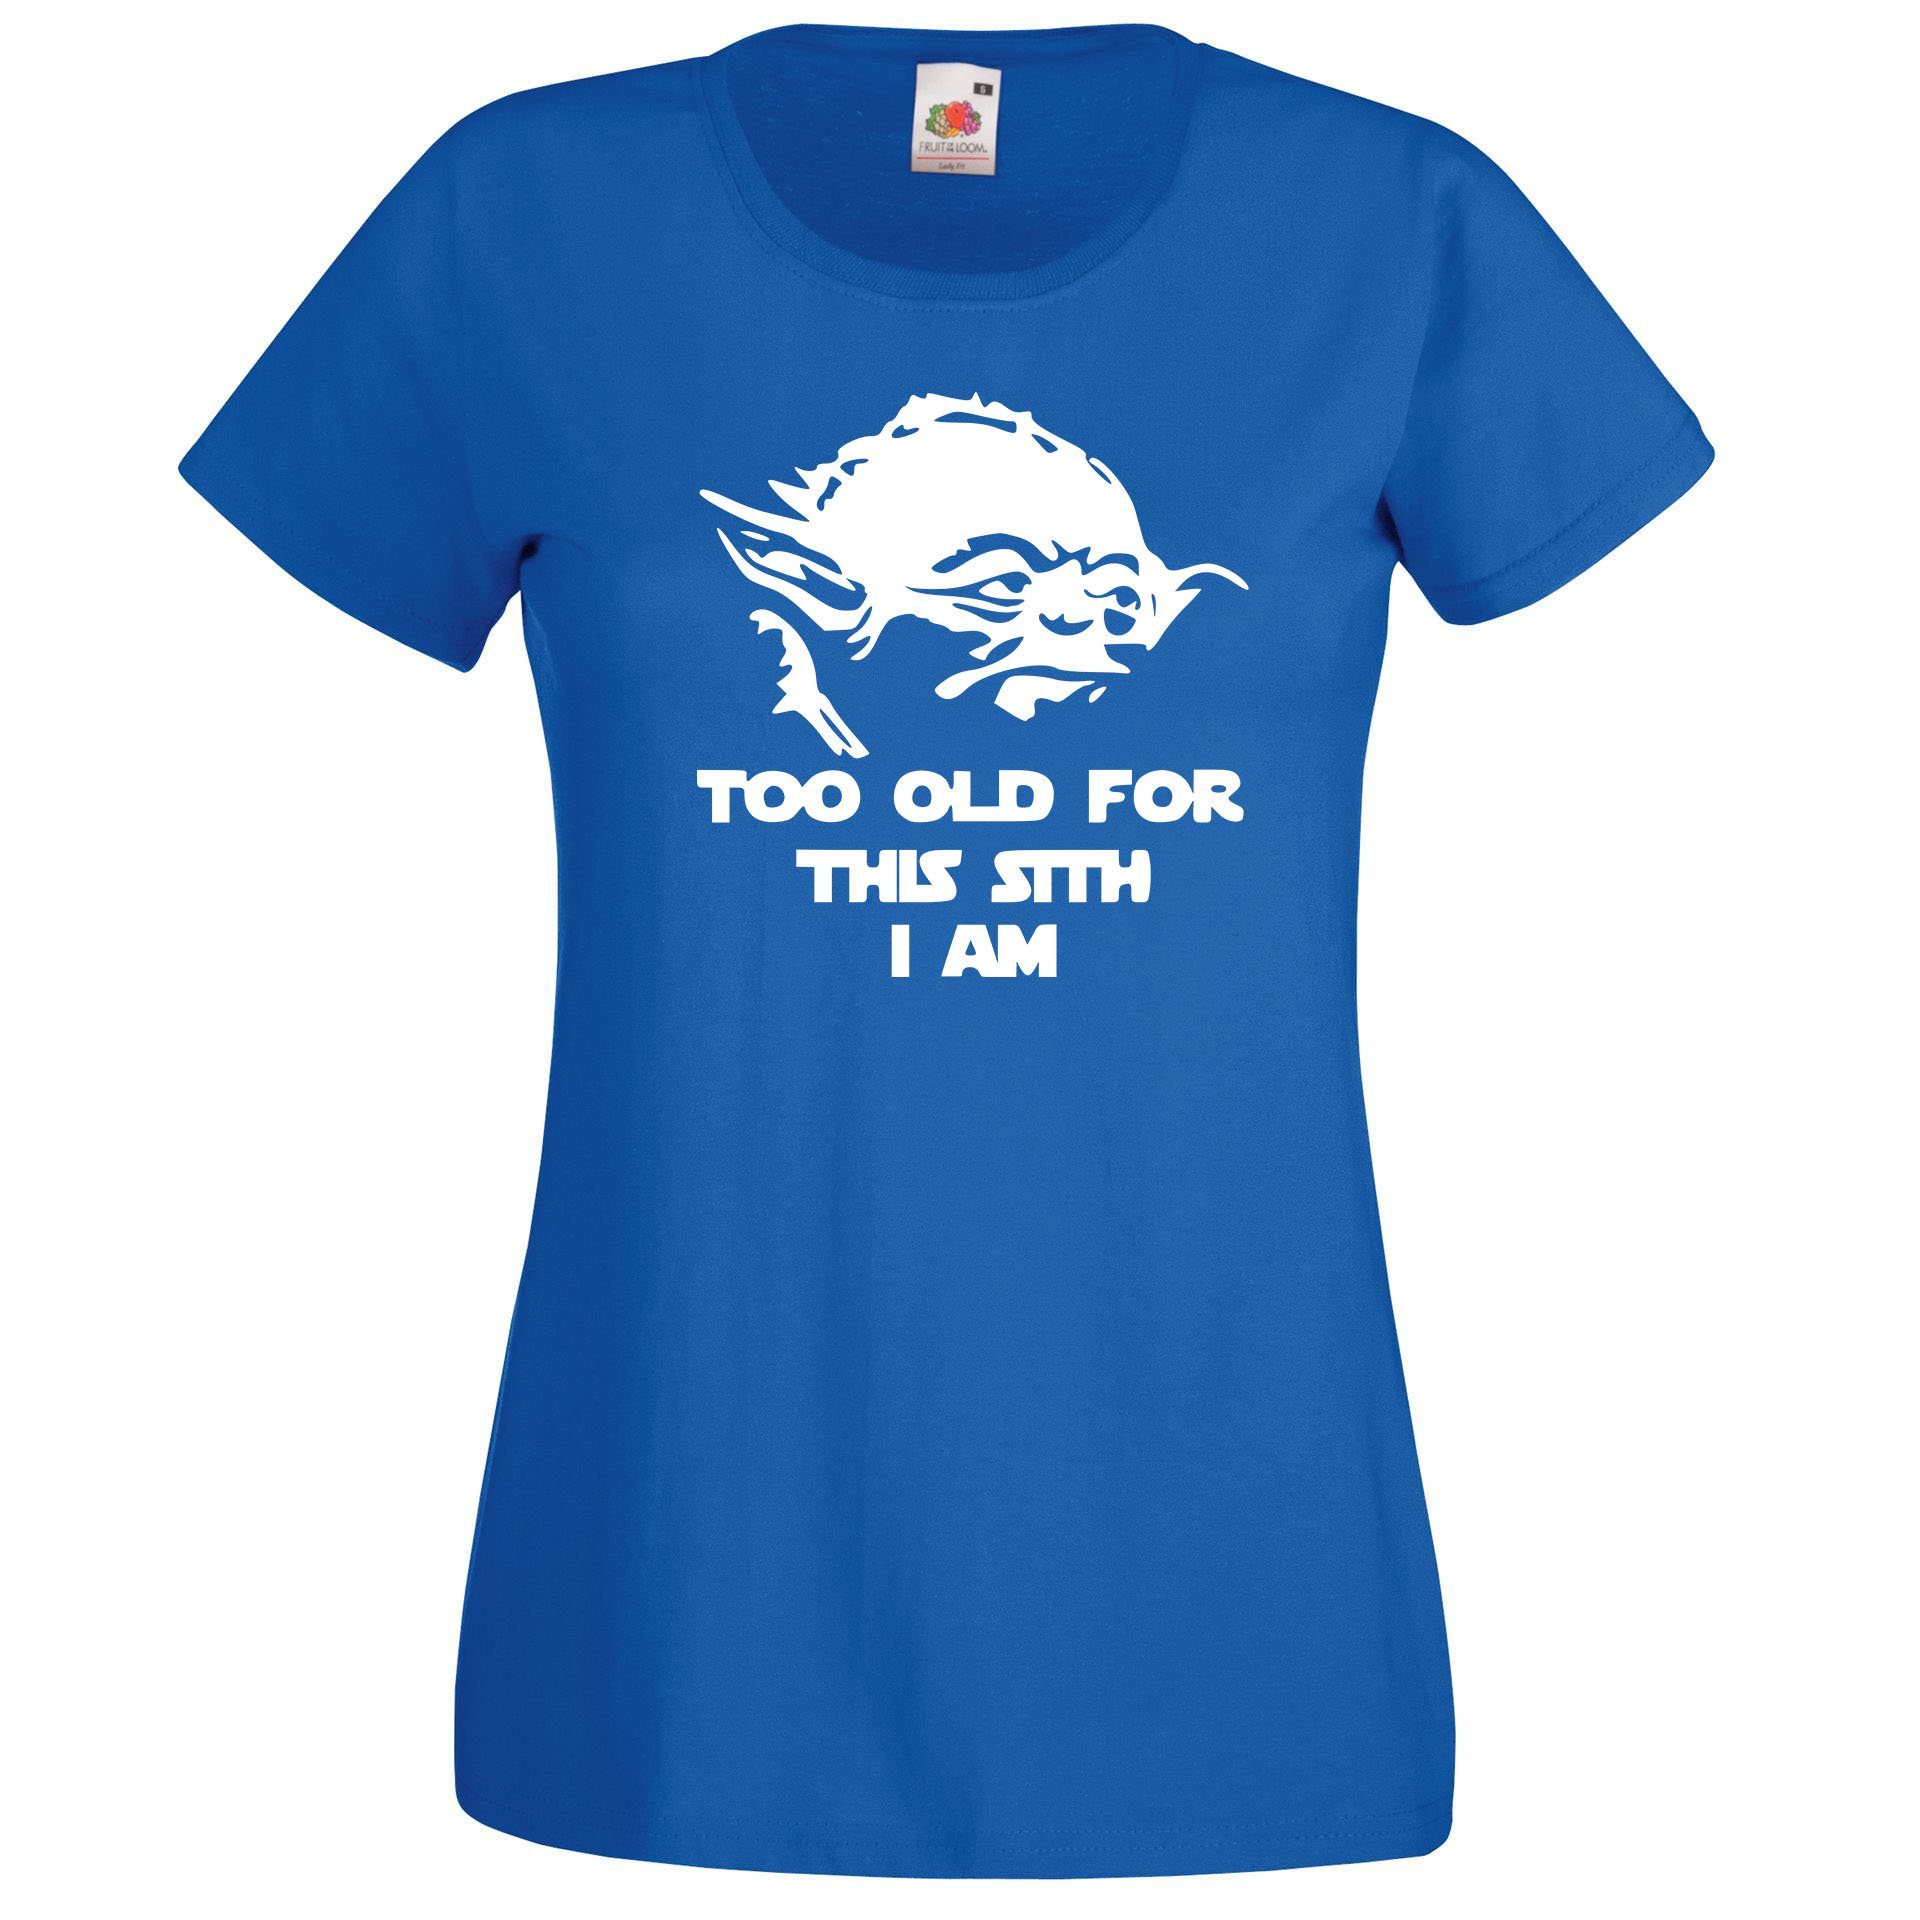 Sith mit trendigem T-Shirt Old T-Shirt Royalblau Designz Damen Youth Spruch Too